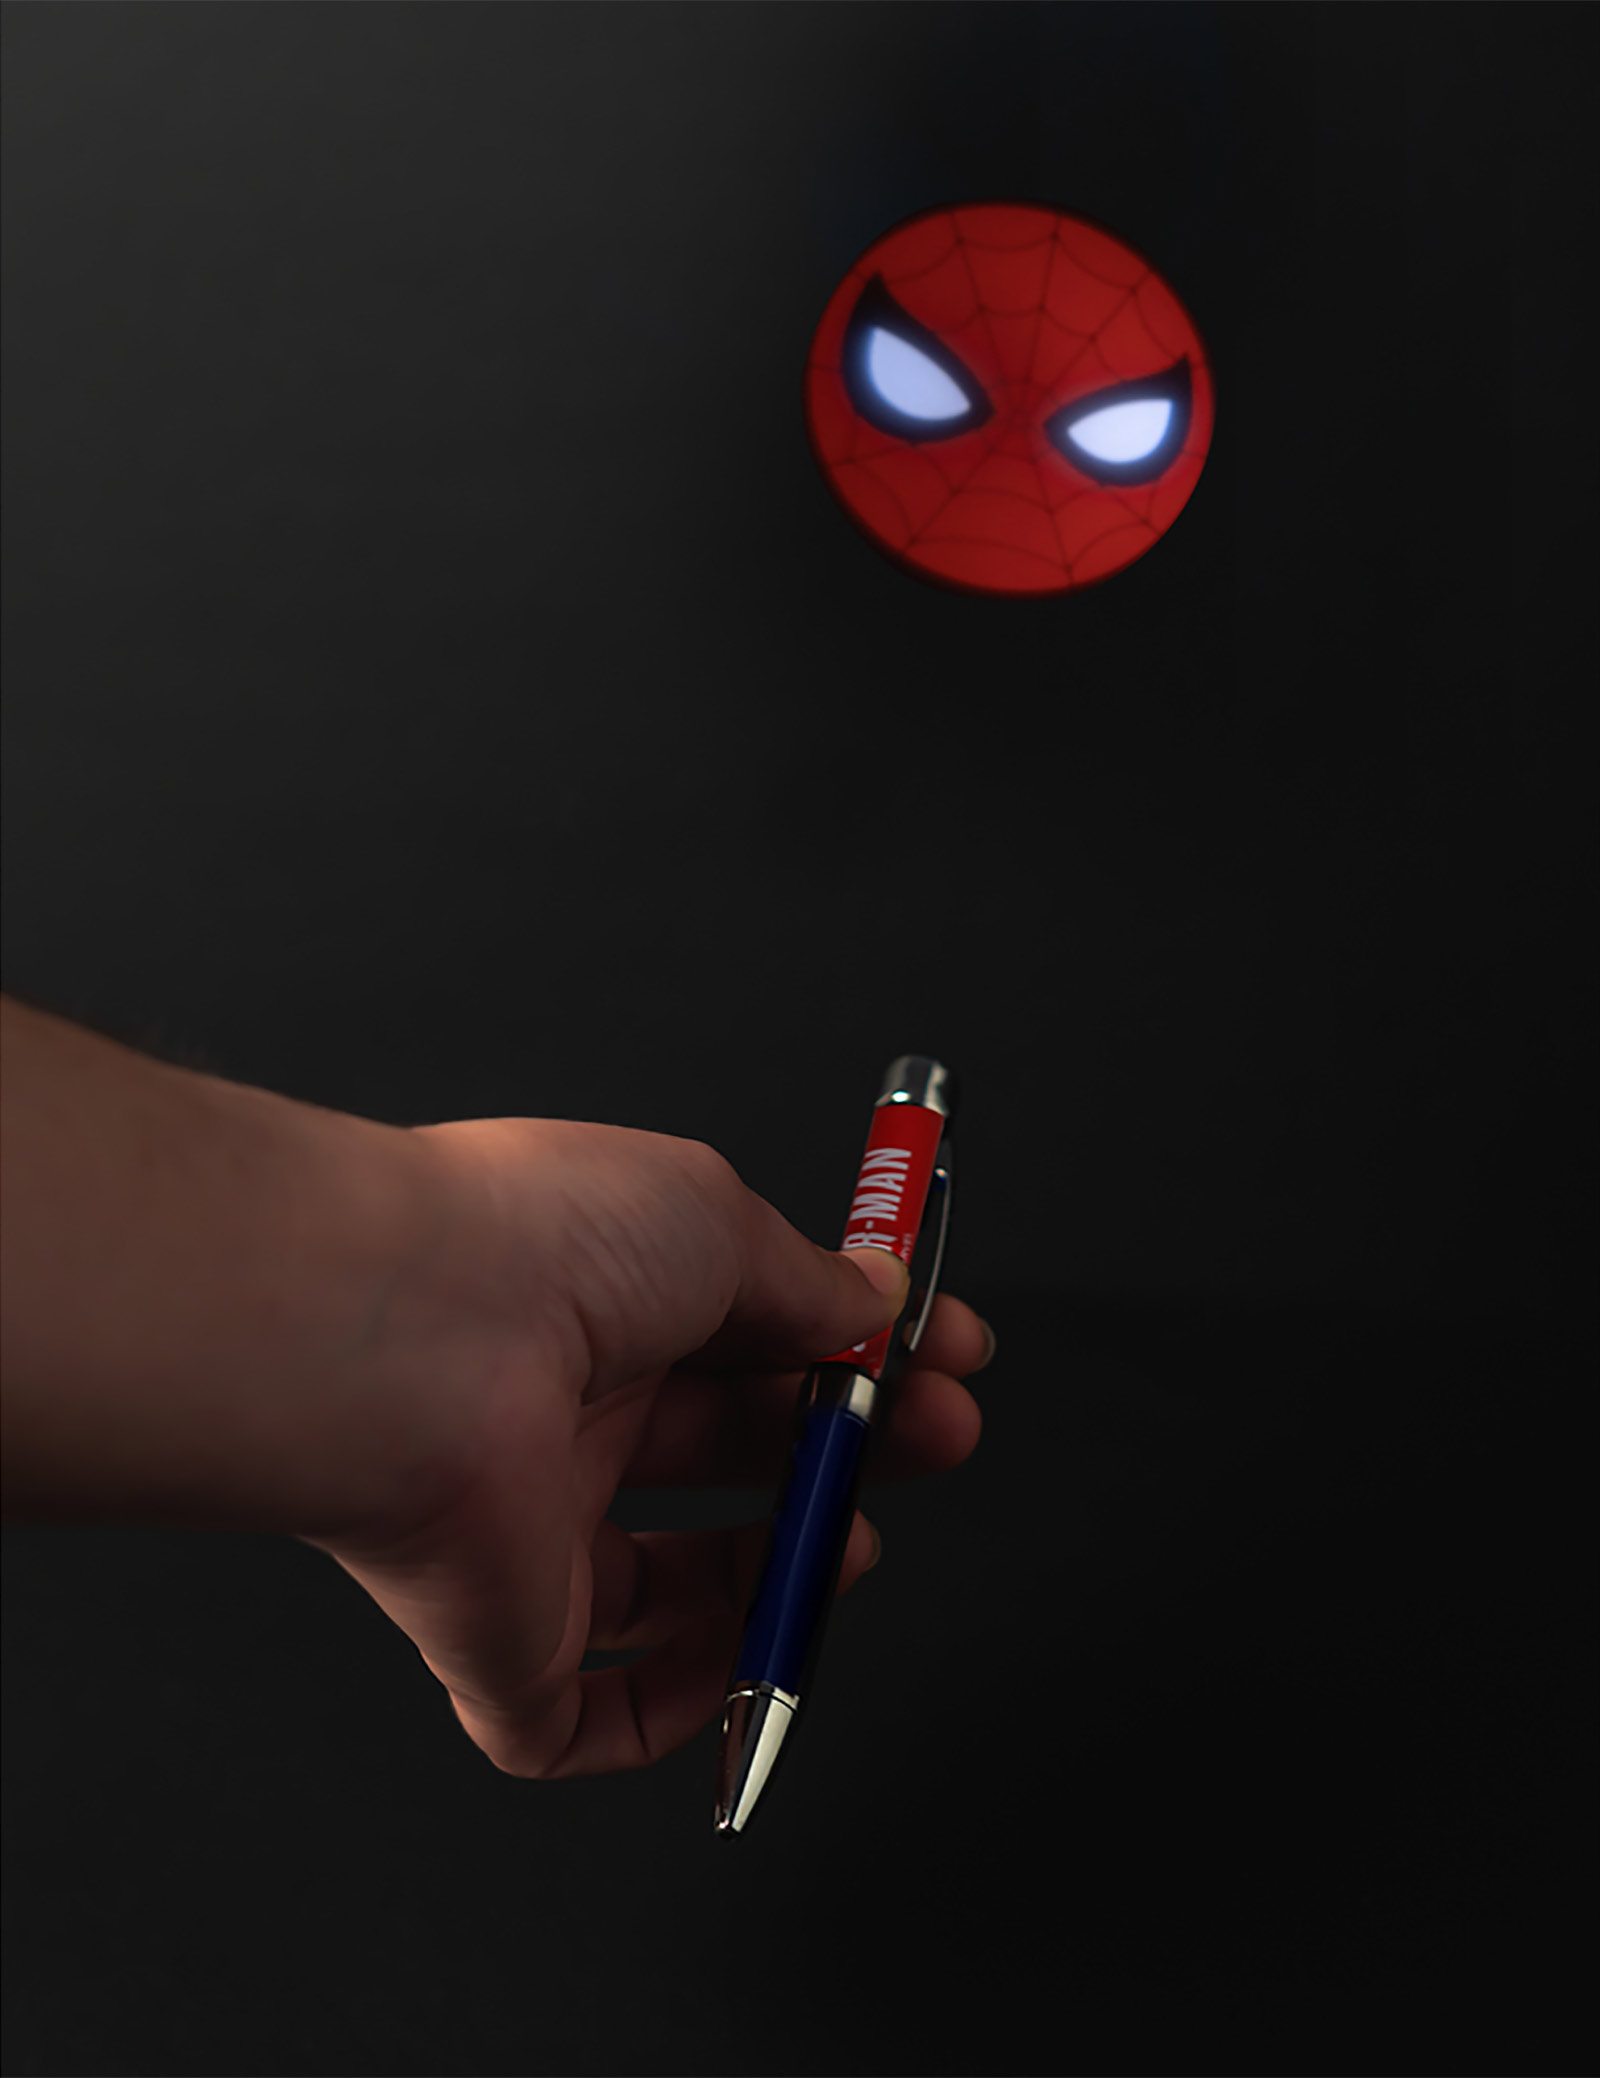 Spider-Man - Logo Notizbuch A5 mit Kugelschreiber